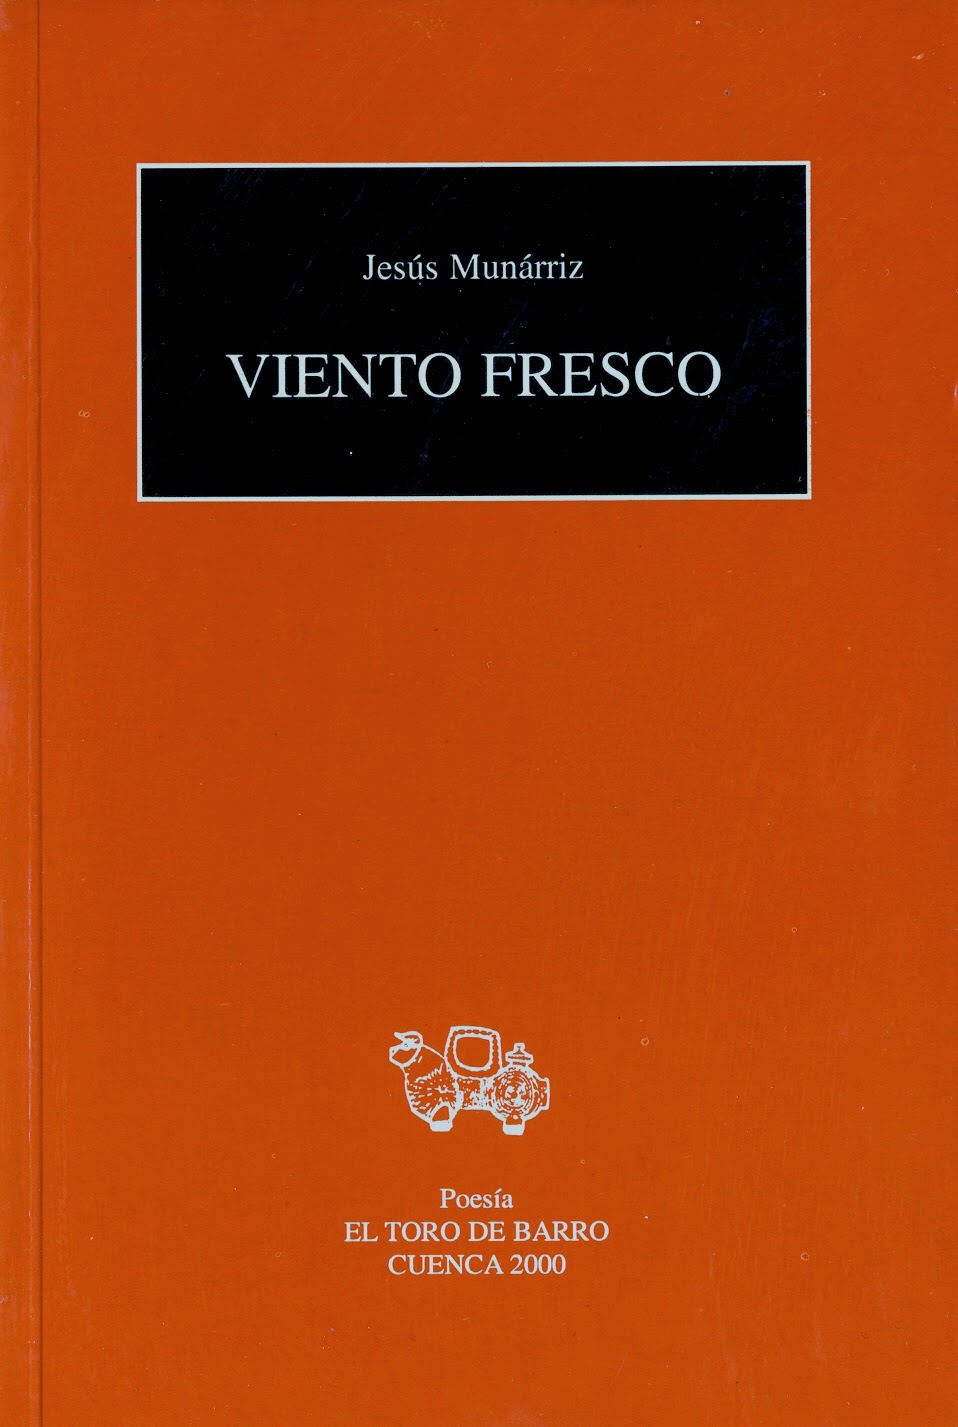 Jesús Munárriz, "Viento Fresco", Ed. El Toro de Barro, Carlos Morales Ed. Cuenca 2000